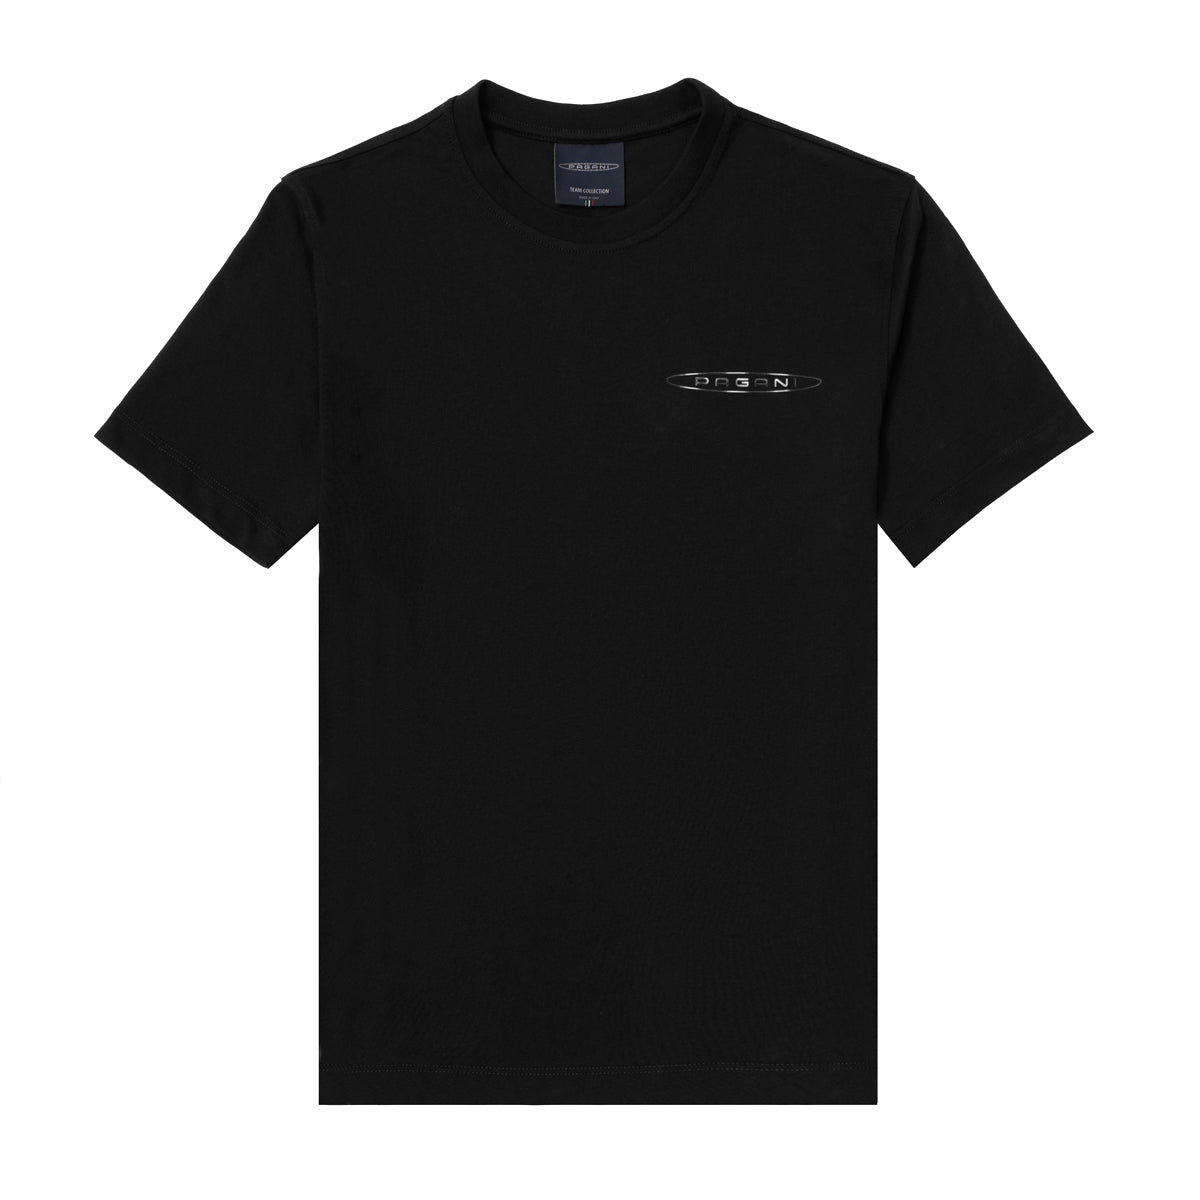 T-Shirt Avec Logo Latéral Homme noire | Team Collection